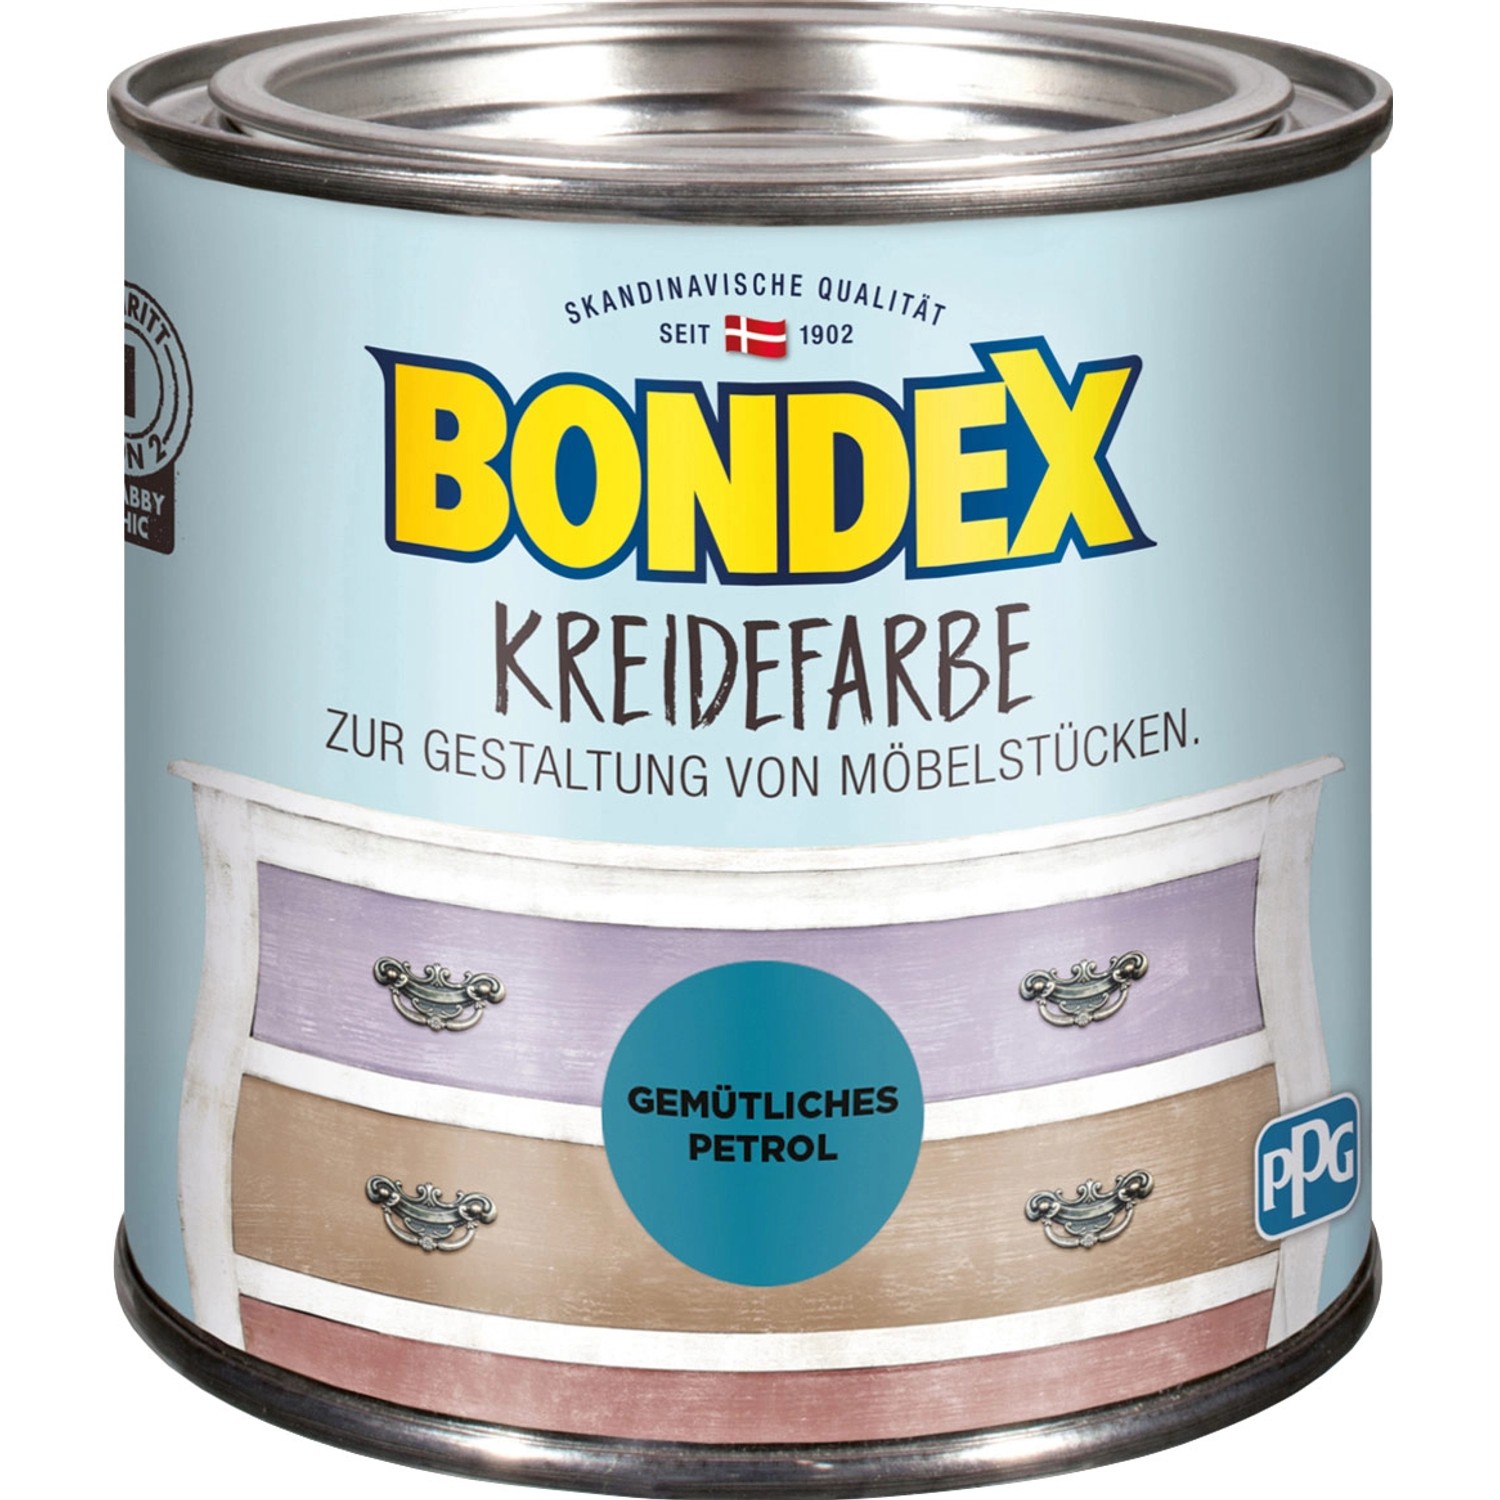 Bondex Kreidefarbe Gemütliches Petrol 500 ml von Bondex